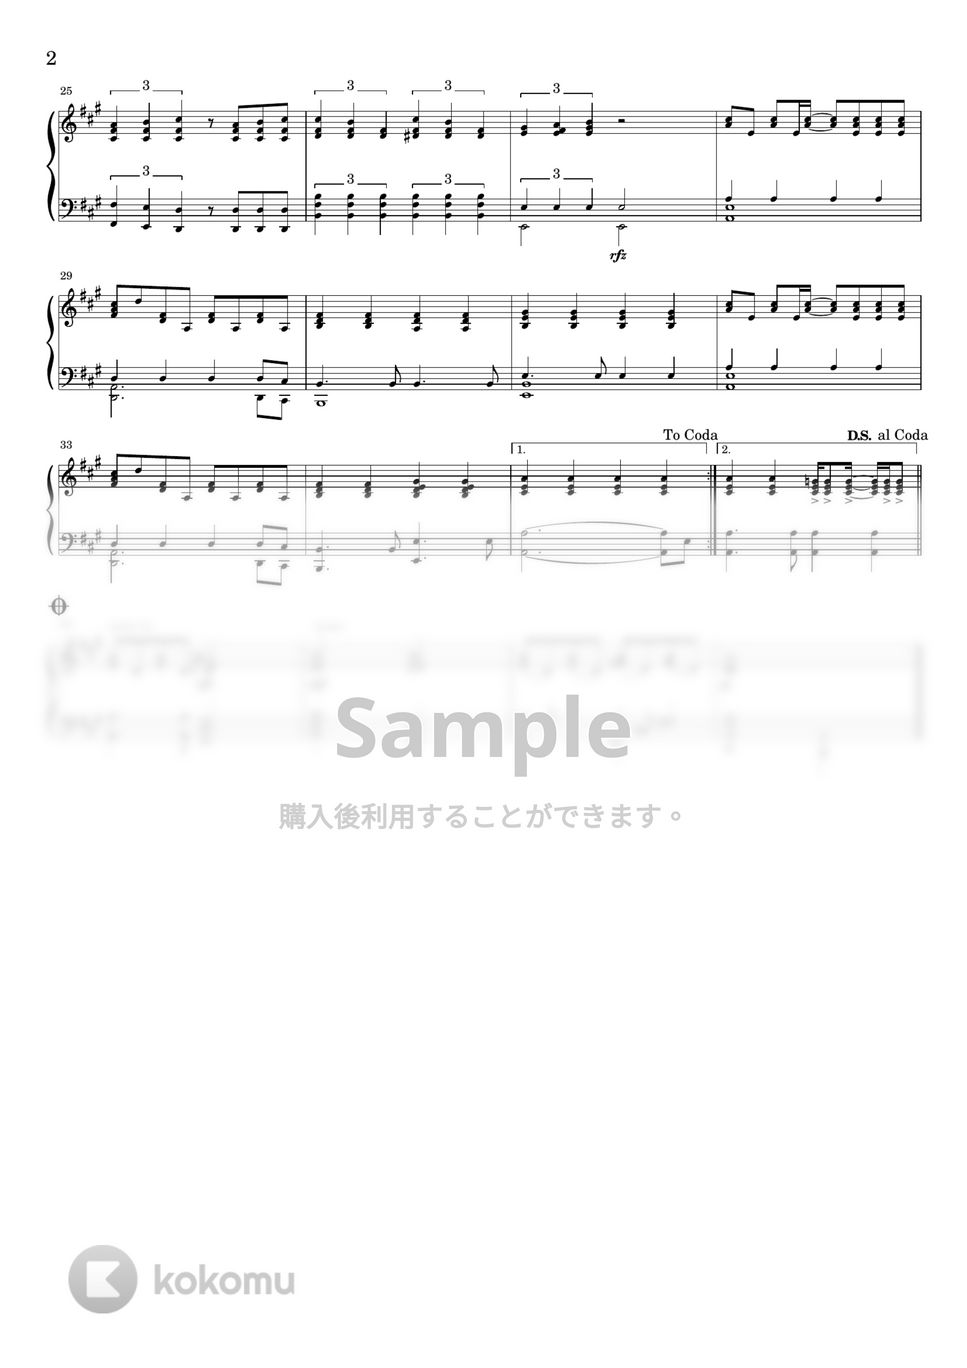 松井孝夫 - マイバラード (ピアノ伴奏譜) by わたなべももこ